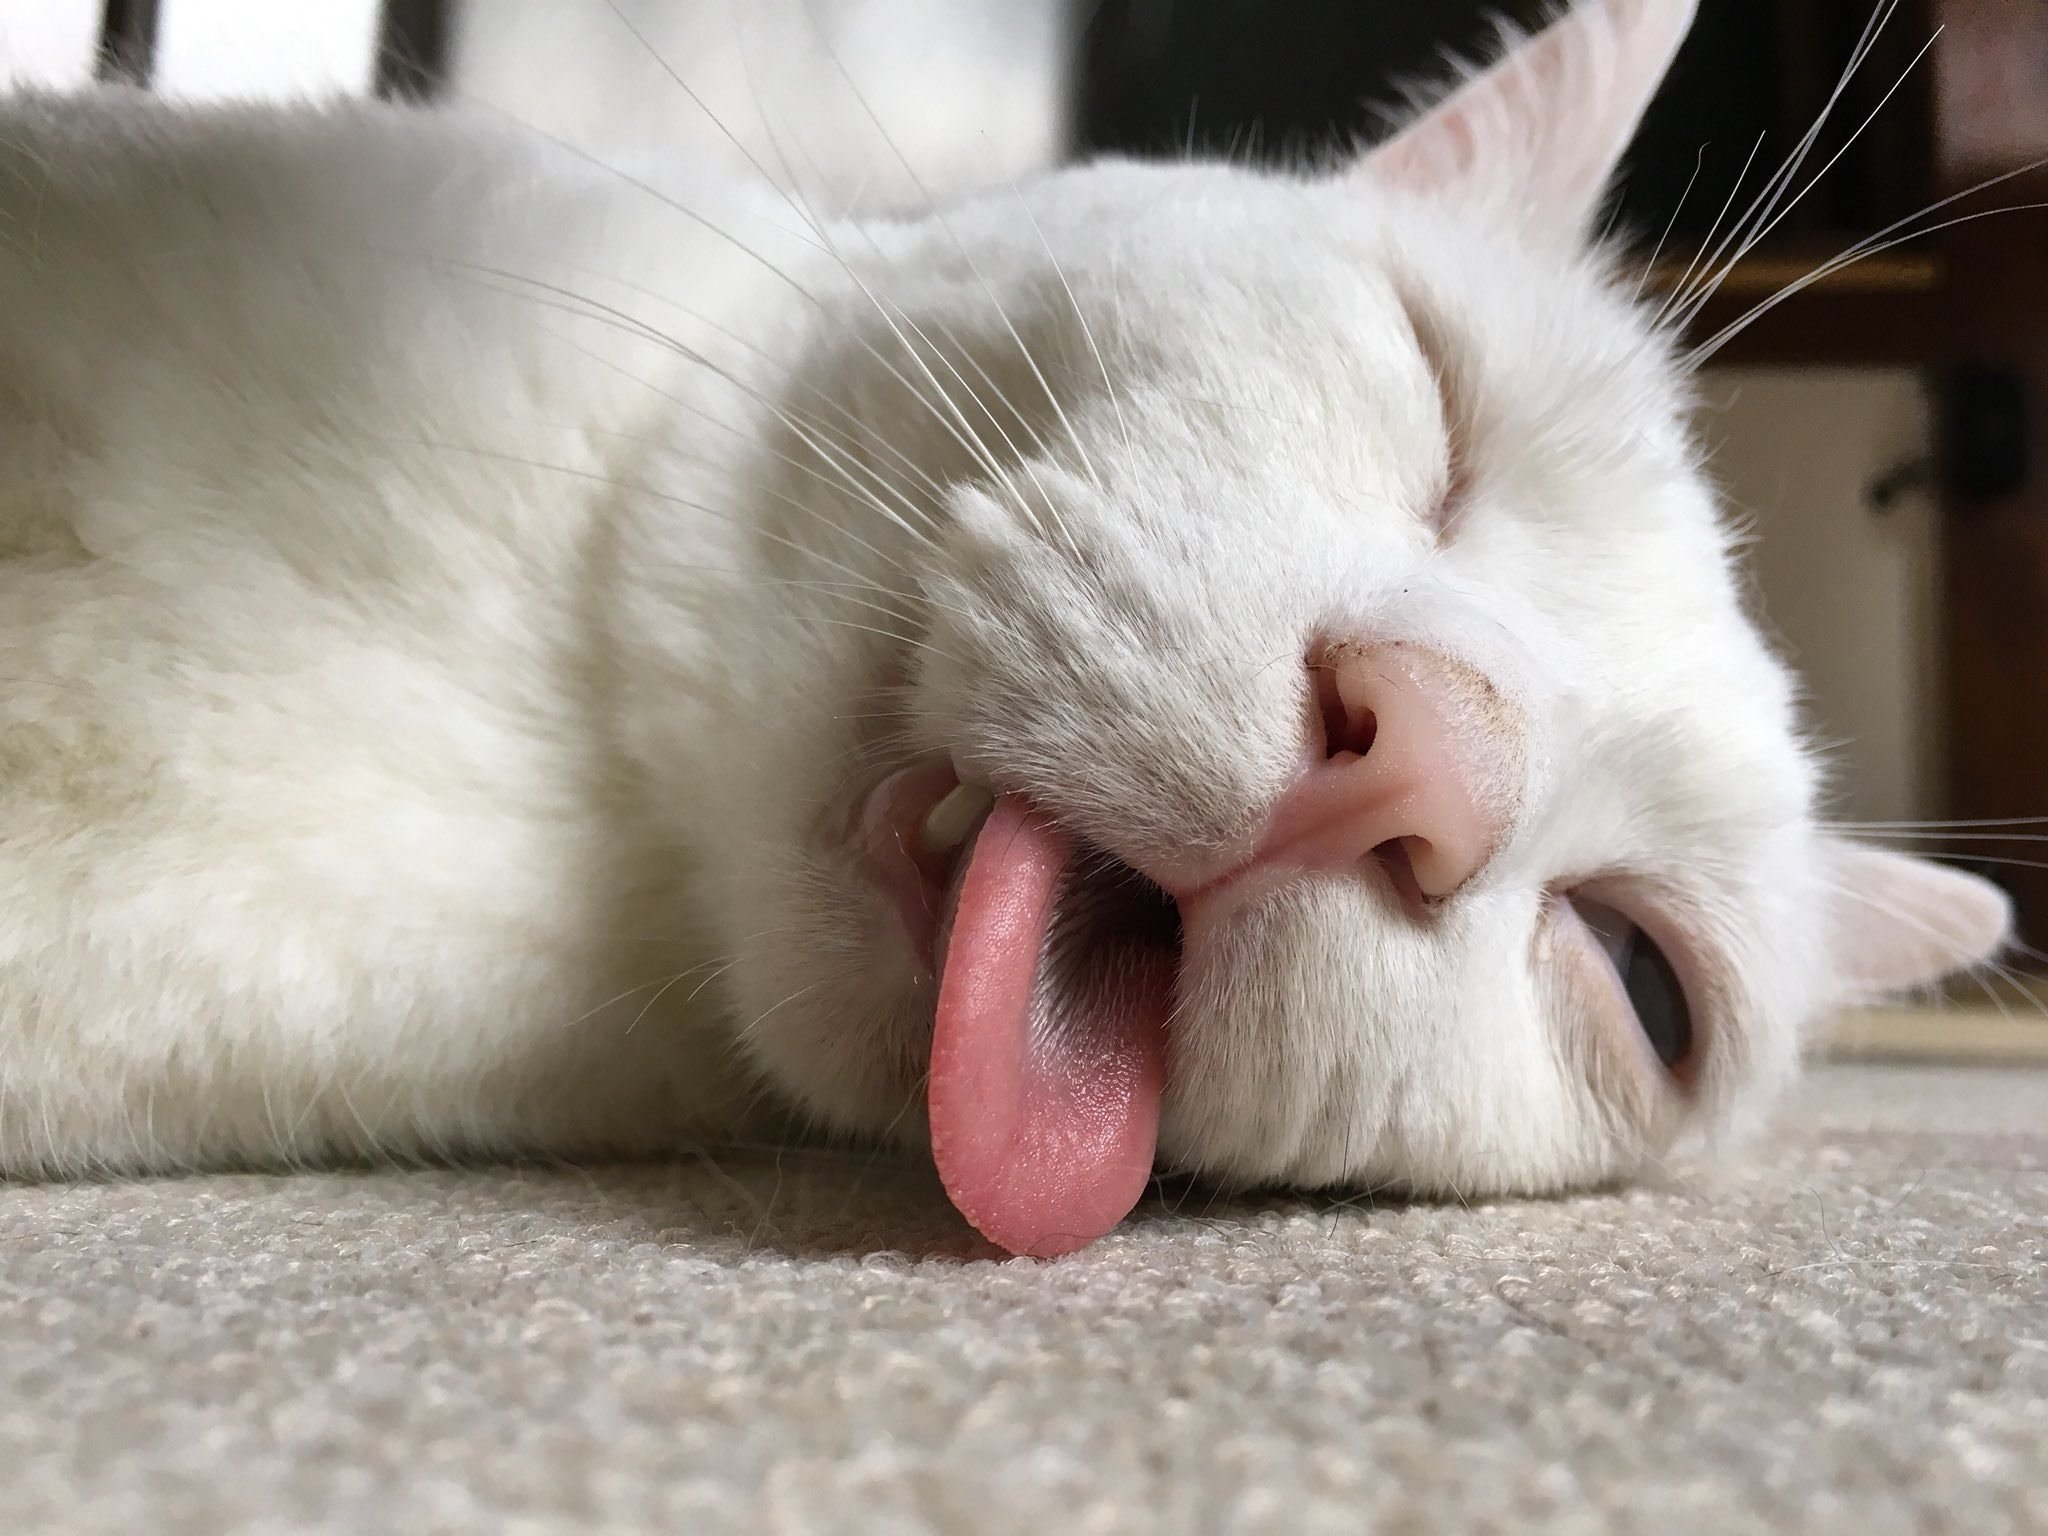 Язык на телефон прикольные. Кошка с высунутым языком. Спящий кот. Белая кошка с высунутым языком. Спящий кот с высунутым языком.